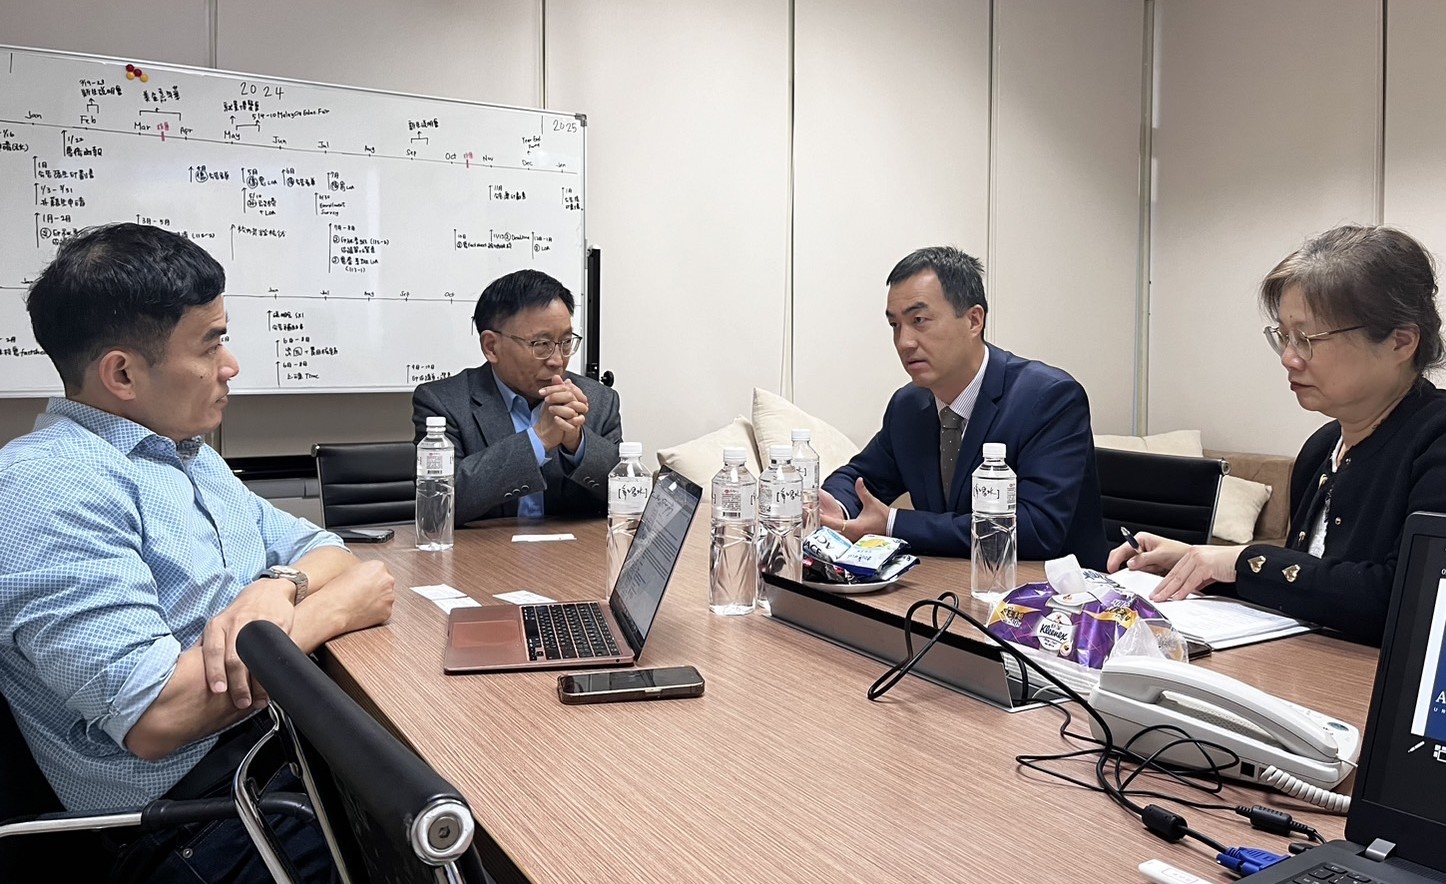 圖為(由左而右)亞大研發長許慶賢、國際長陳英輝、加拿大駐台北貿易辦事處副處長Danyu Bai、商務資深經理Sylvia Shih，雙方討論未來交流合作事宜。